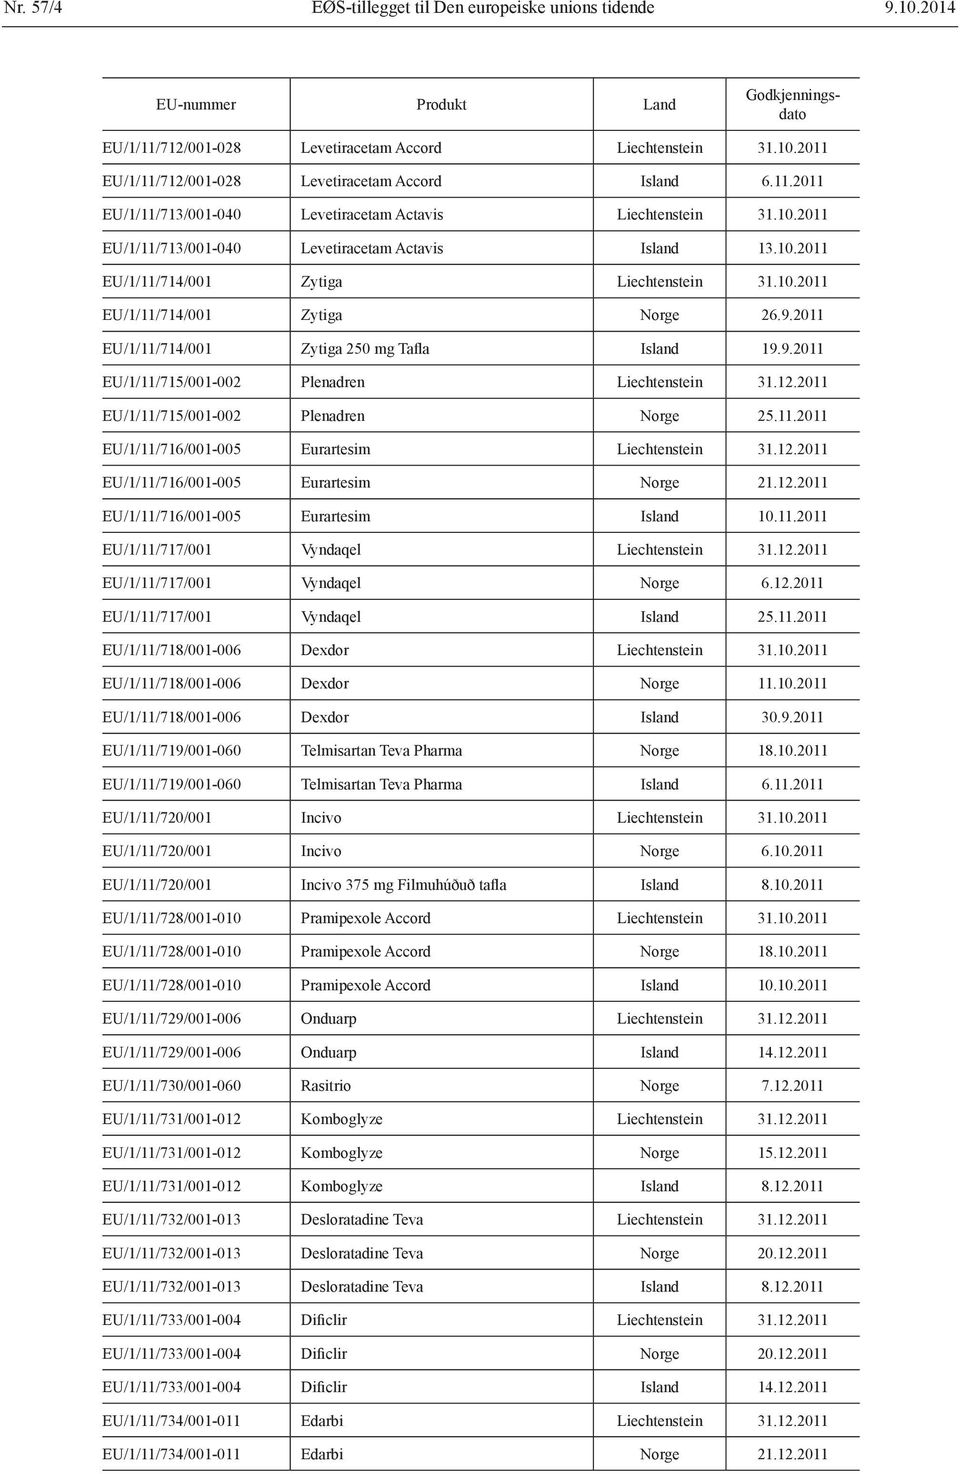 2011 EU/1/11/714/001 Zytiga 250 mg Tafla Island 19.9.2011 EU/1/11/715/001-002 Plenadren Liechtenstein 31.12.2011 EU/1/11/715/001-002 Plenadren Norge 25.11.2011 EU/1/11/716/001-005 Eurartesim Liechtenstein 31.